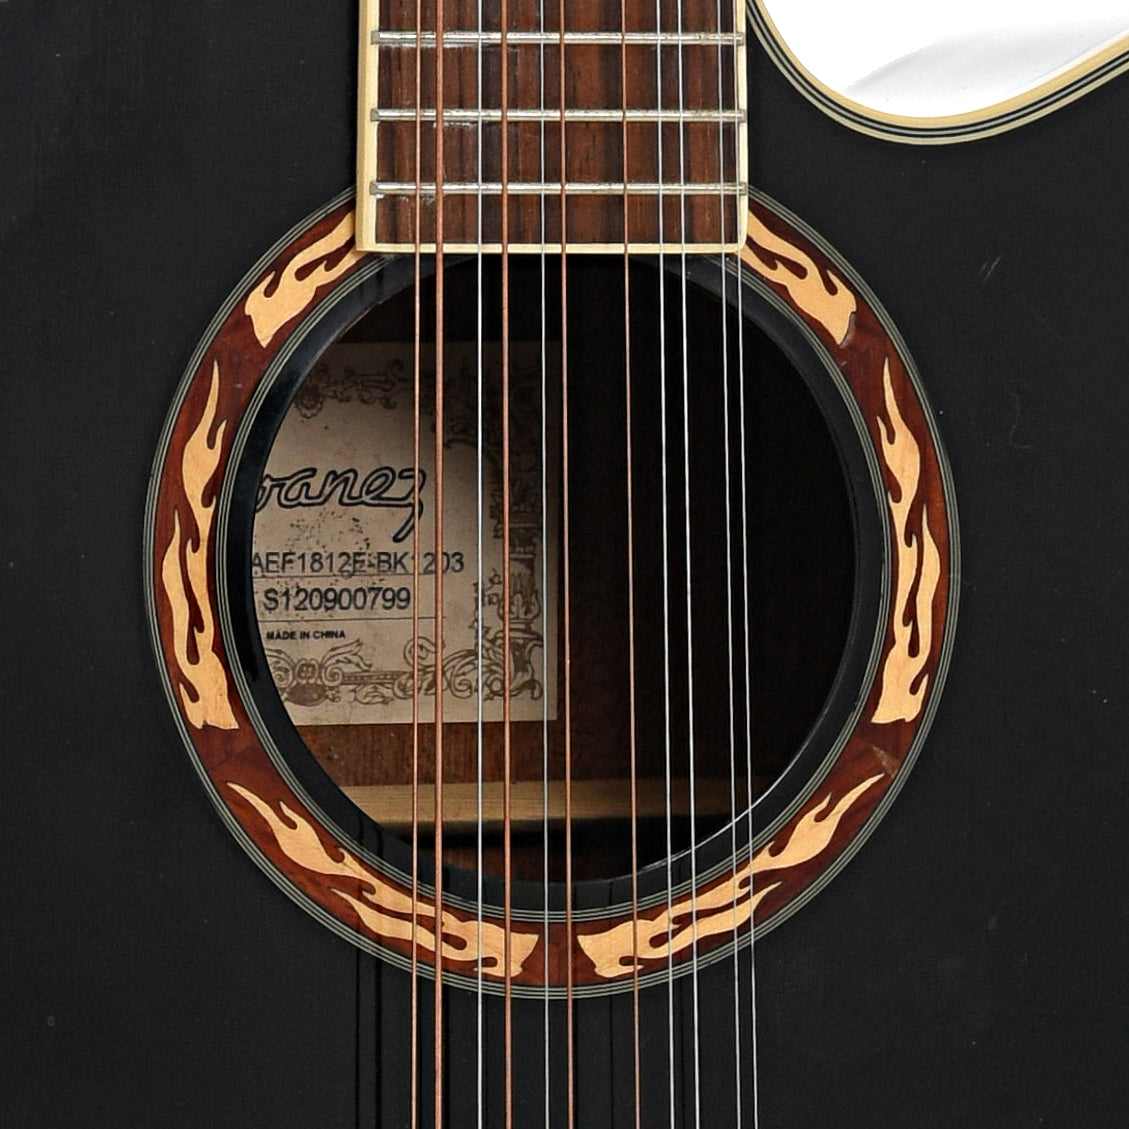 Soundhole of Ibanez AFF1812F BK1203 12-String Acoustic Guitar